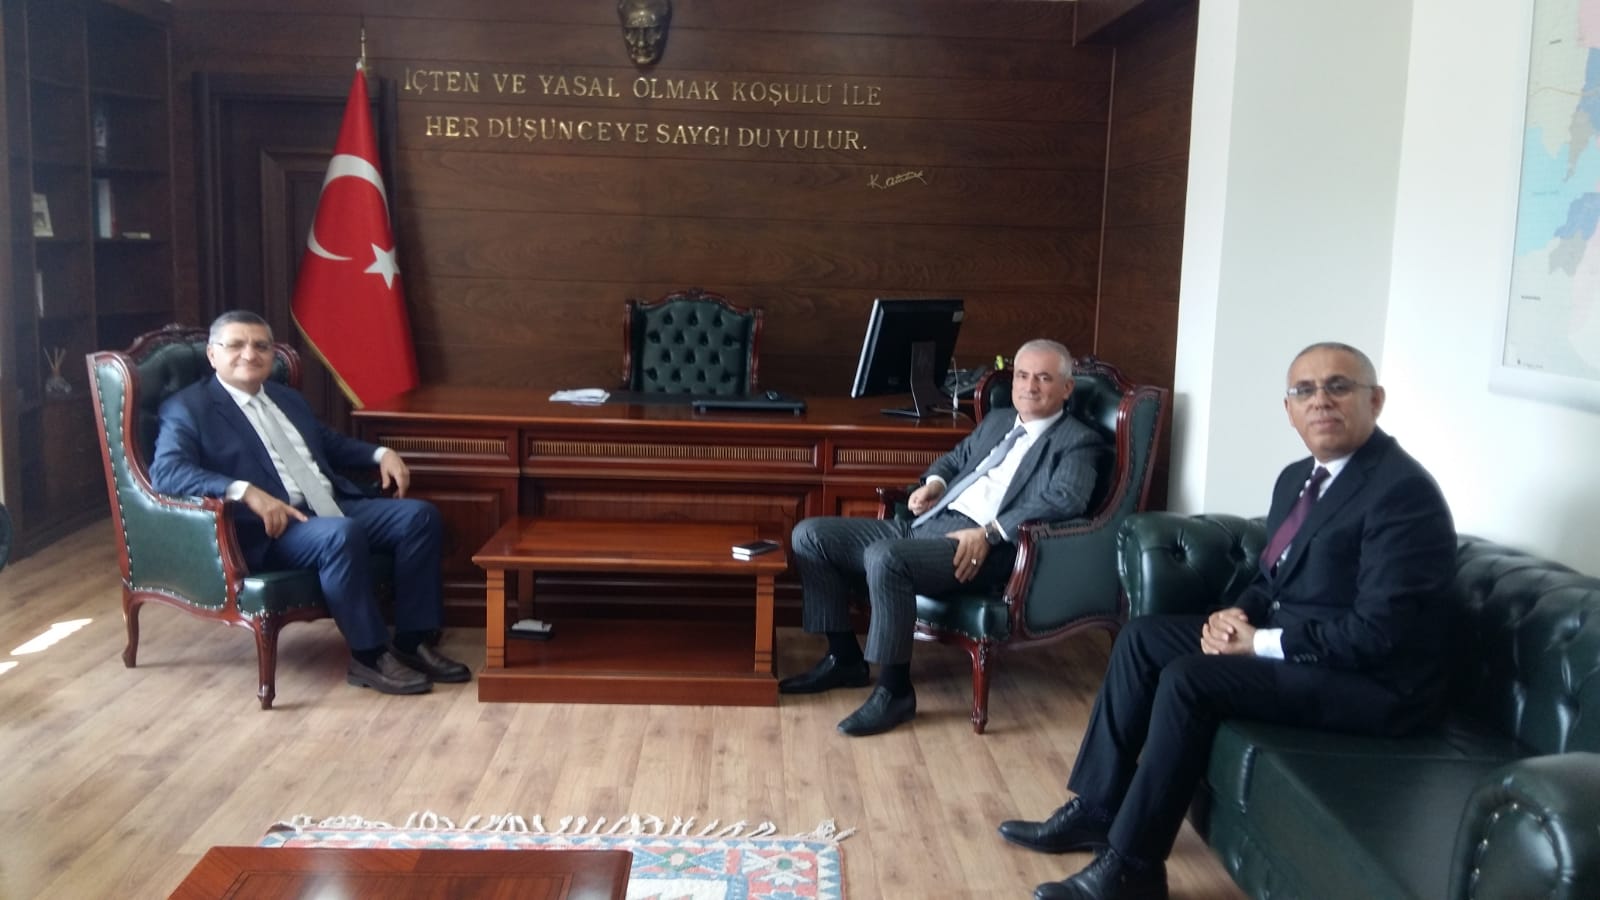 Bölge Müdürümüz Sayın Adnan CEVHER,  Nilüfer Kaymakamı Sayın Dr. Mustafa ÖZARSLAN’ ı  13.09.2022 tarihinde makamında ziyaret etmiştir.